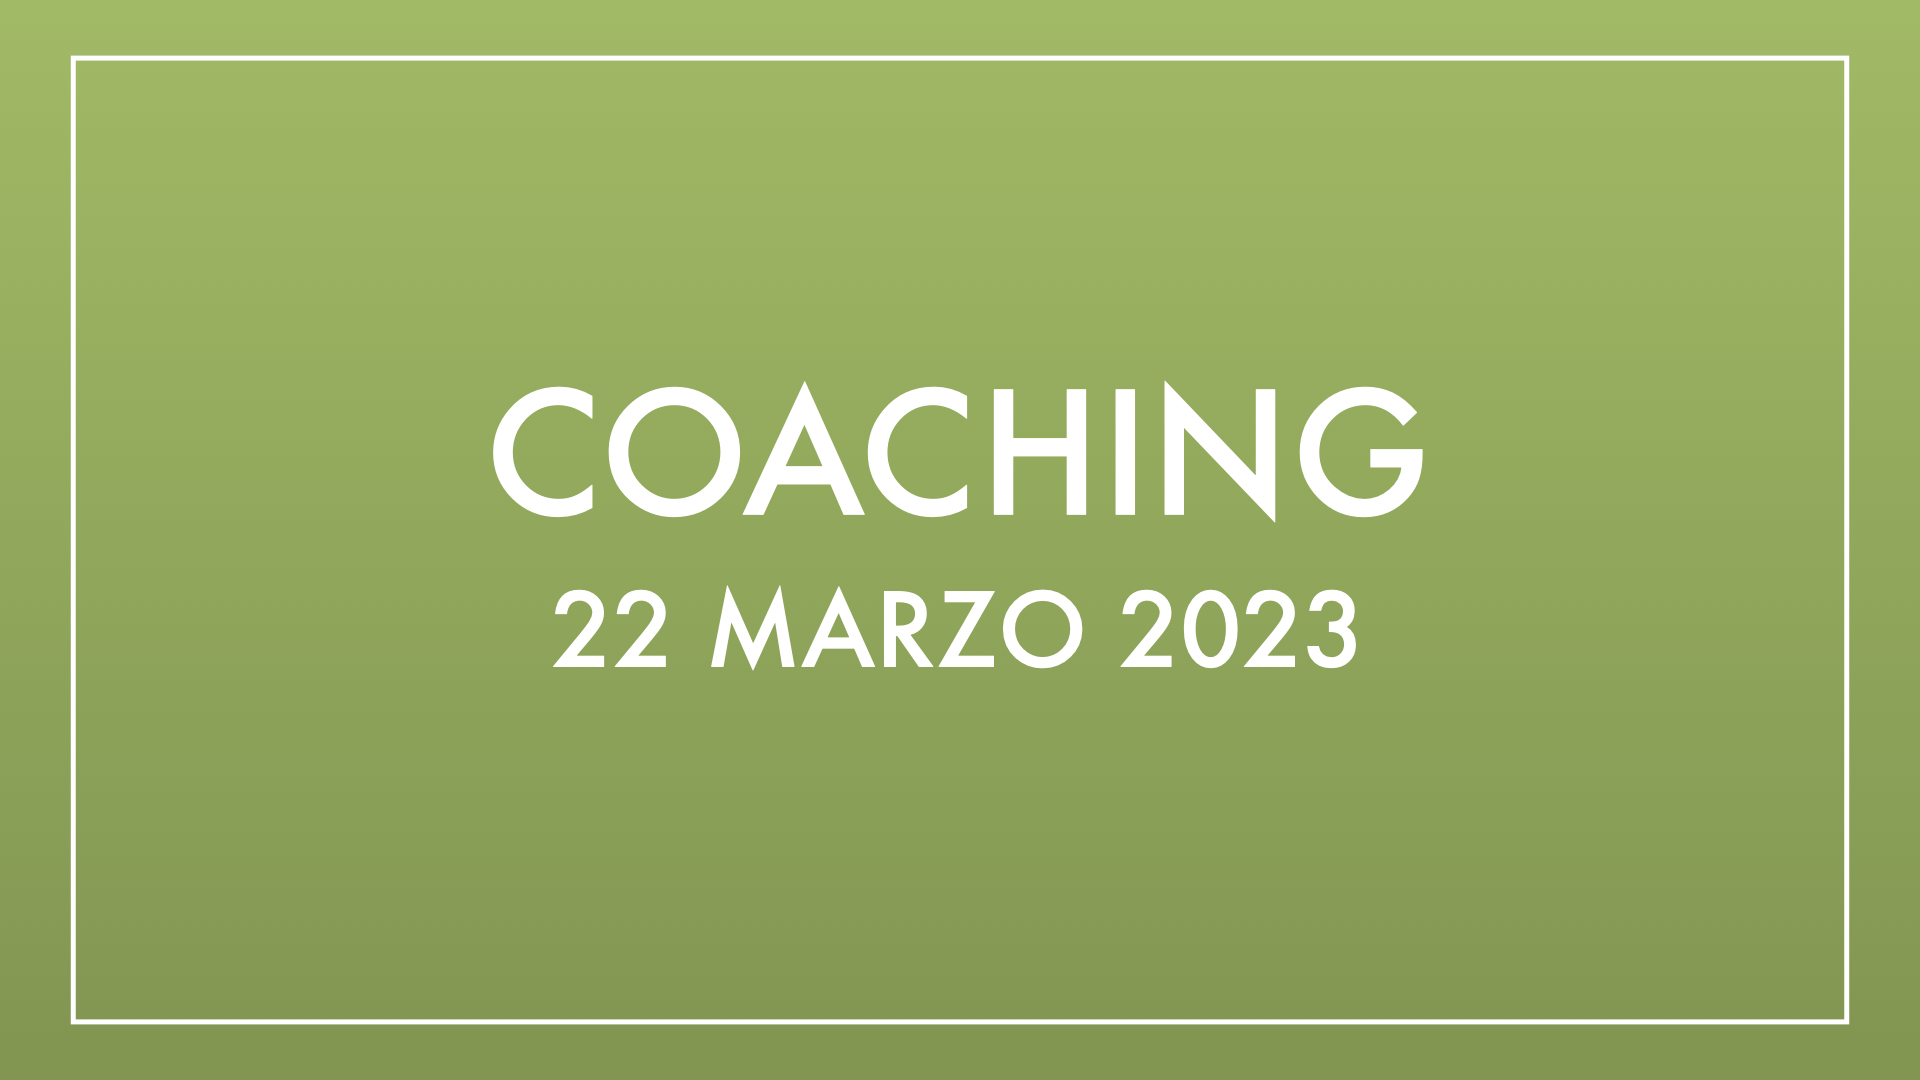 Coaching 22 marzo 2023